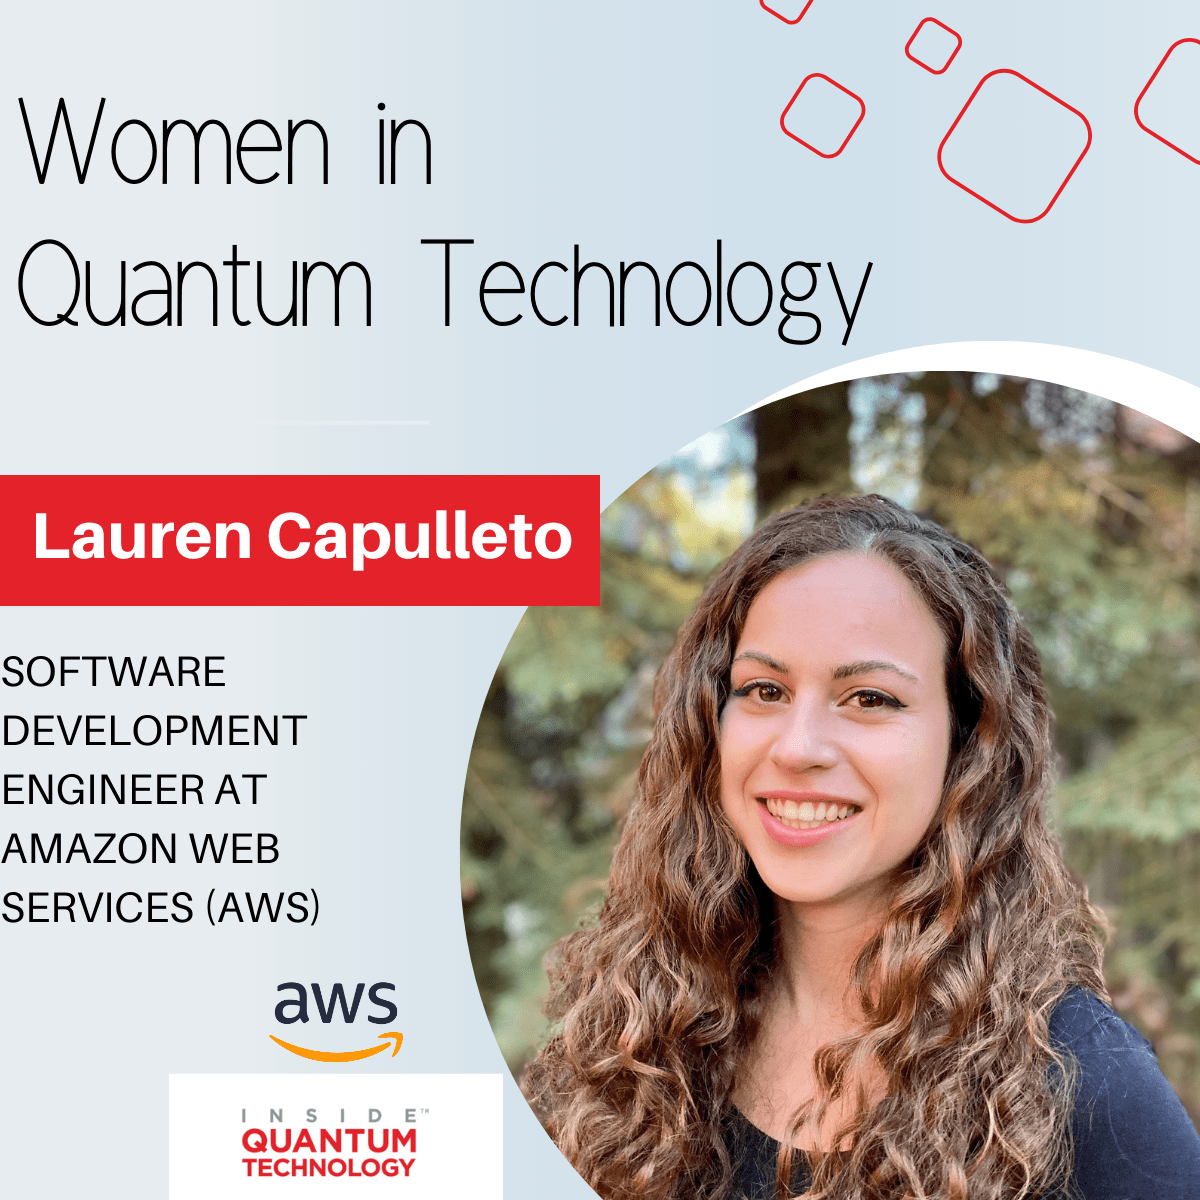 Lauren Capulleto, ingeniera de desarrollo de software de Amazon Web Services (AWS) cuenta su historia sobre cómo ingresar a la industria cuántica.